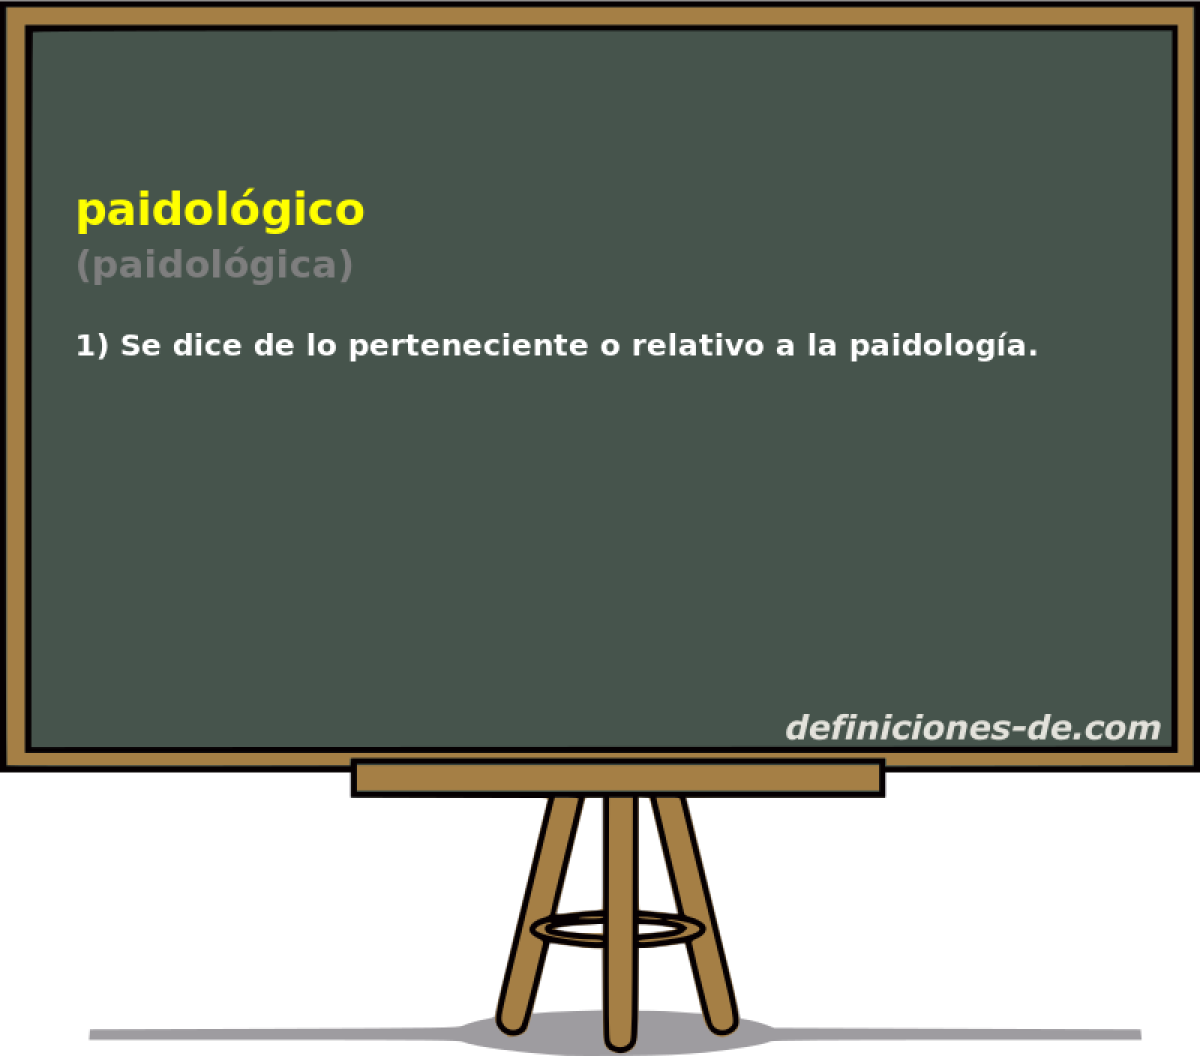 paidolgico (paidolgica)